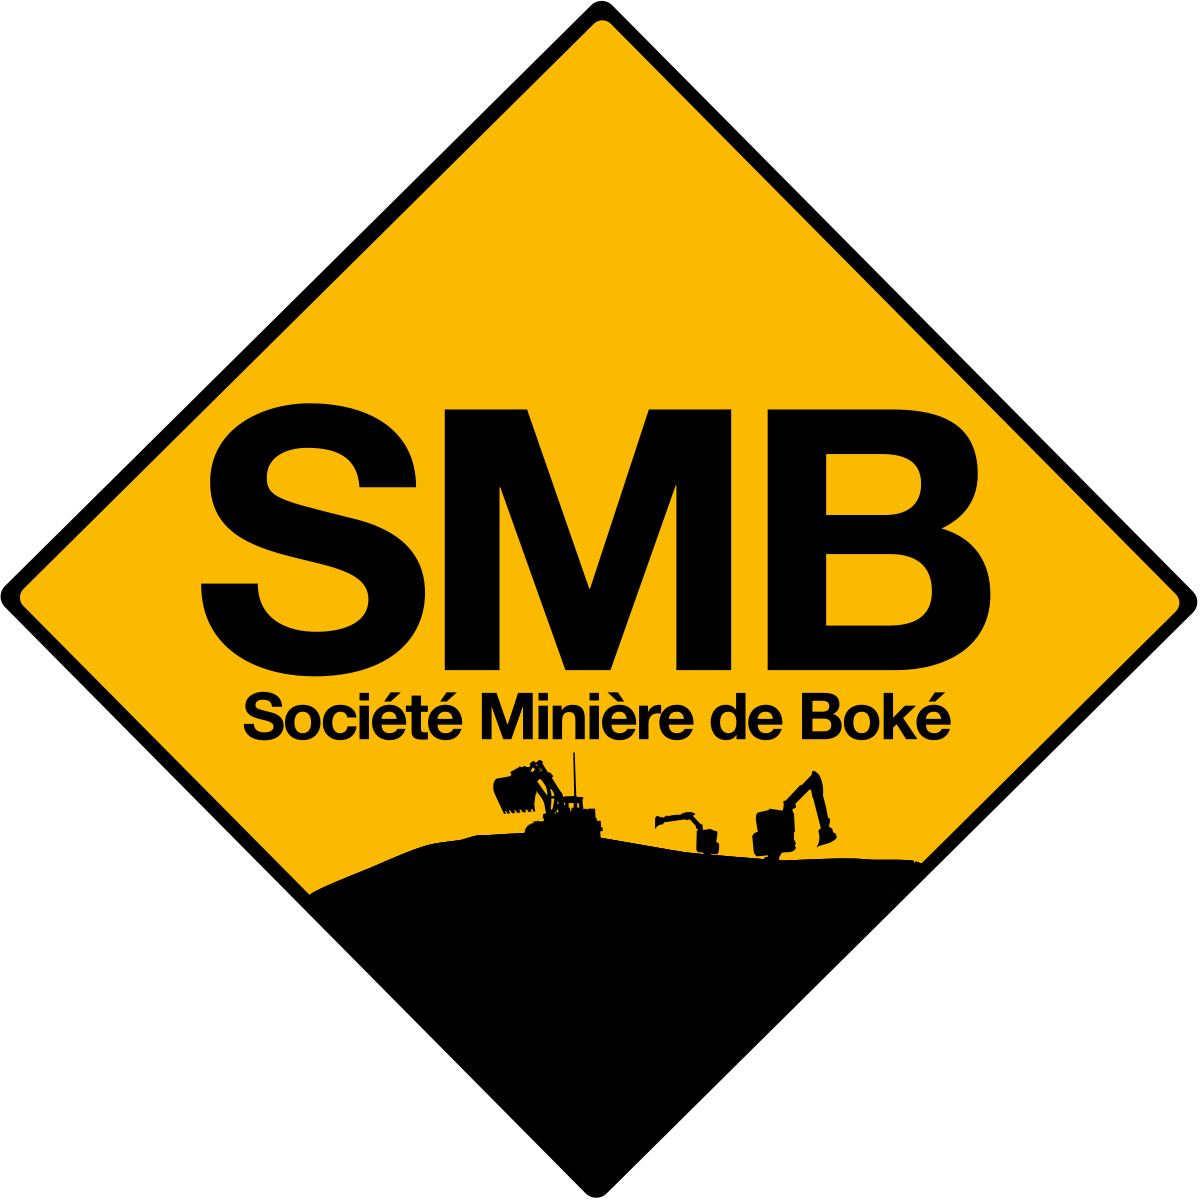 Offre d’emploi: la Société Minière de Boké lance un recrutement massif